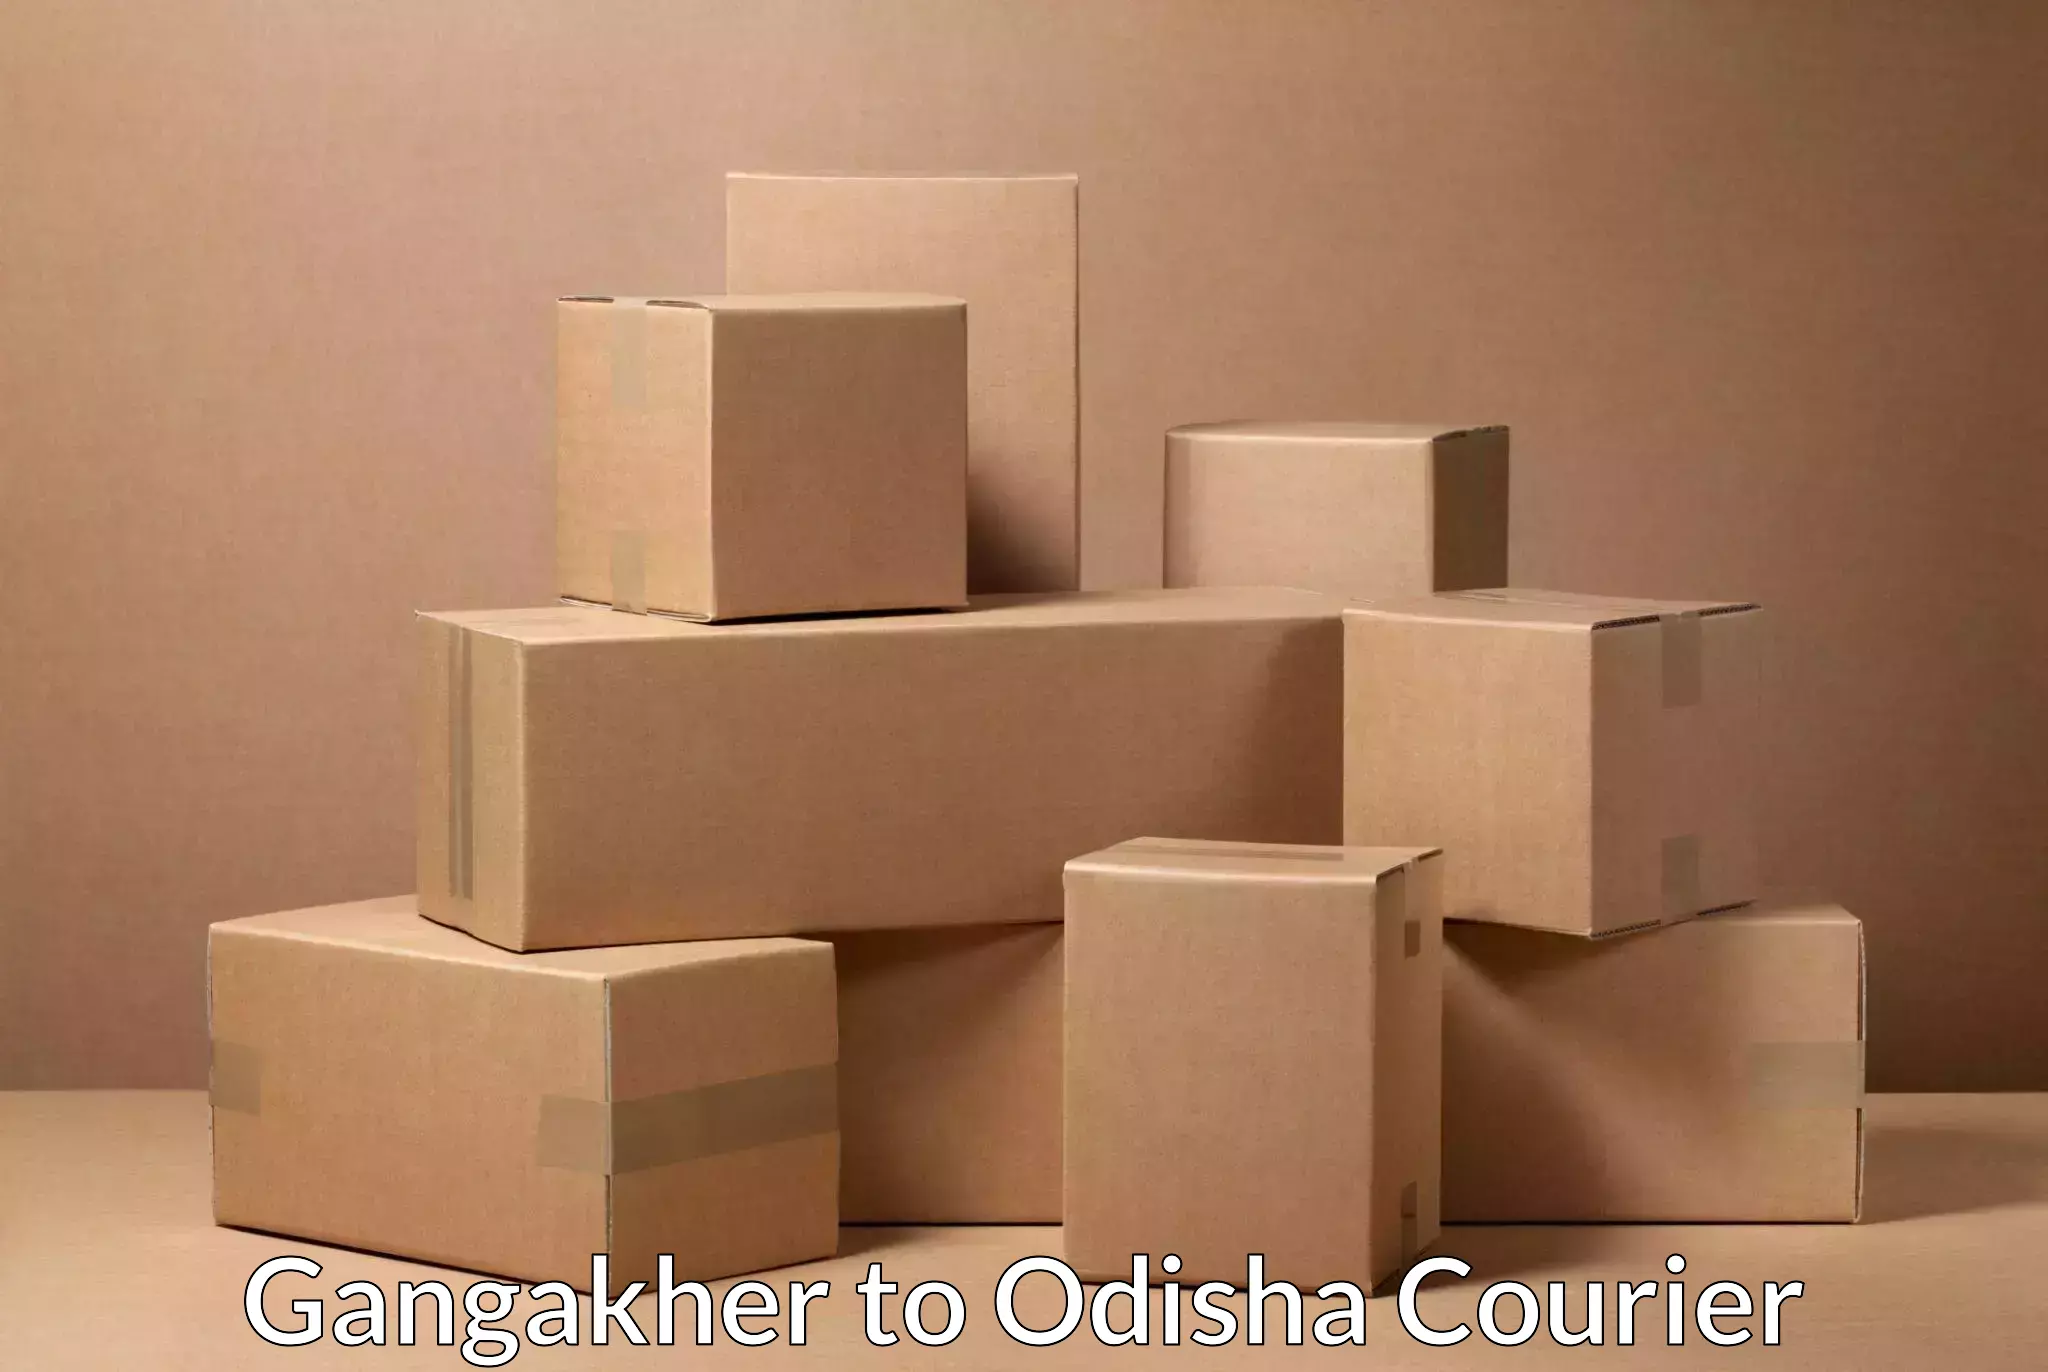 Sustainable shipping practices Gangakher to Odisha